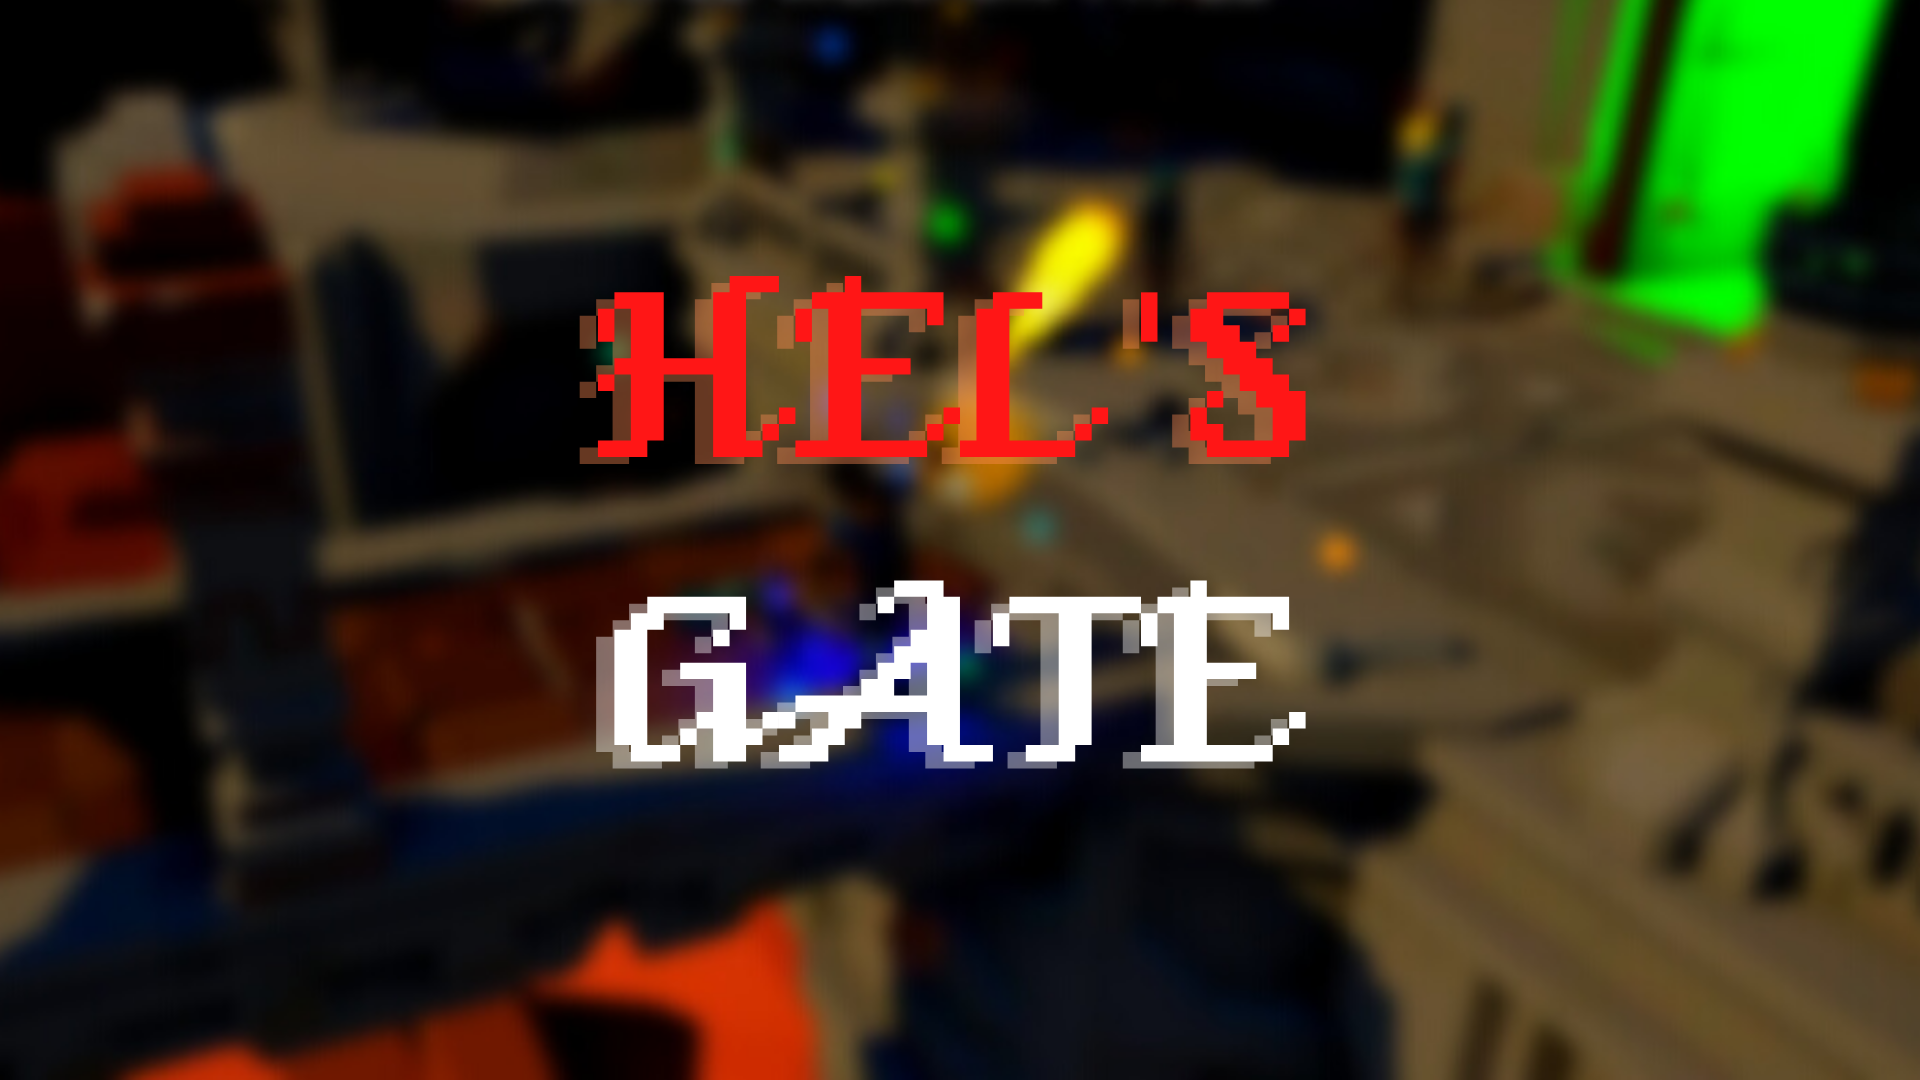 Hel's Gate 